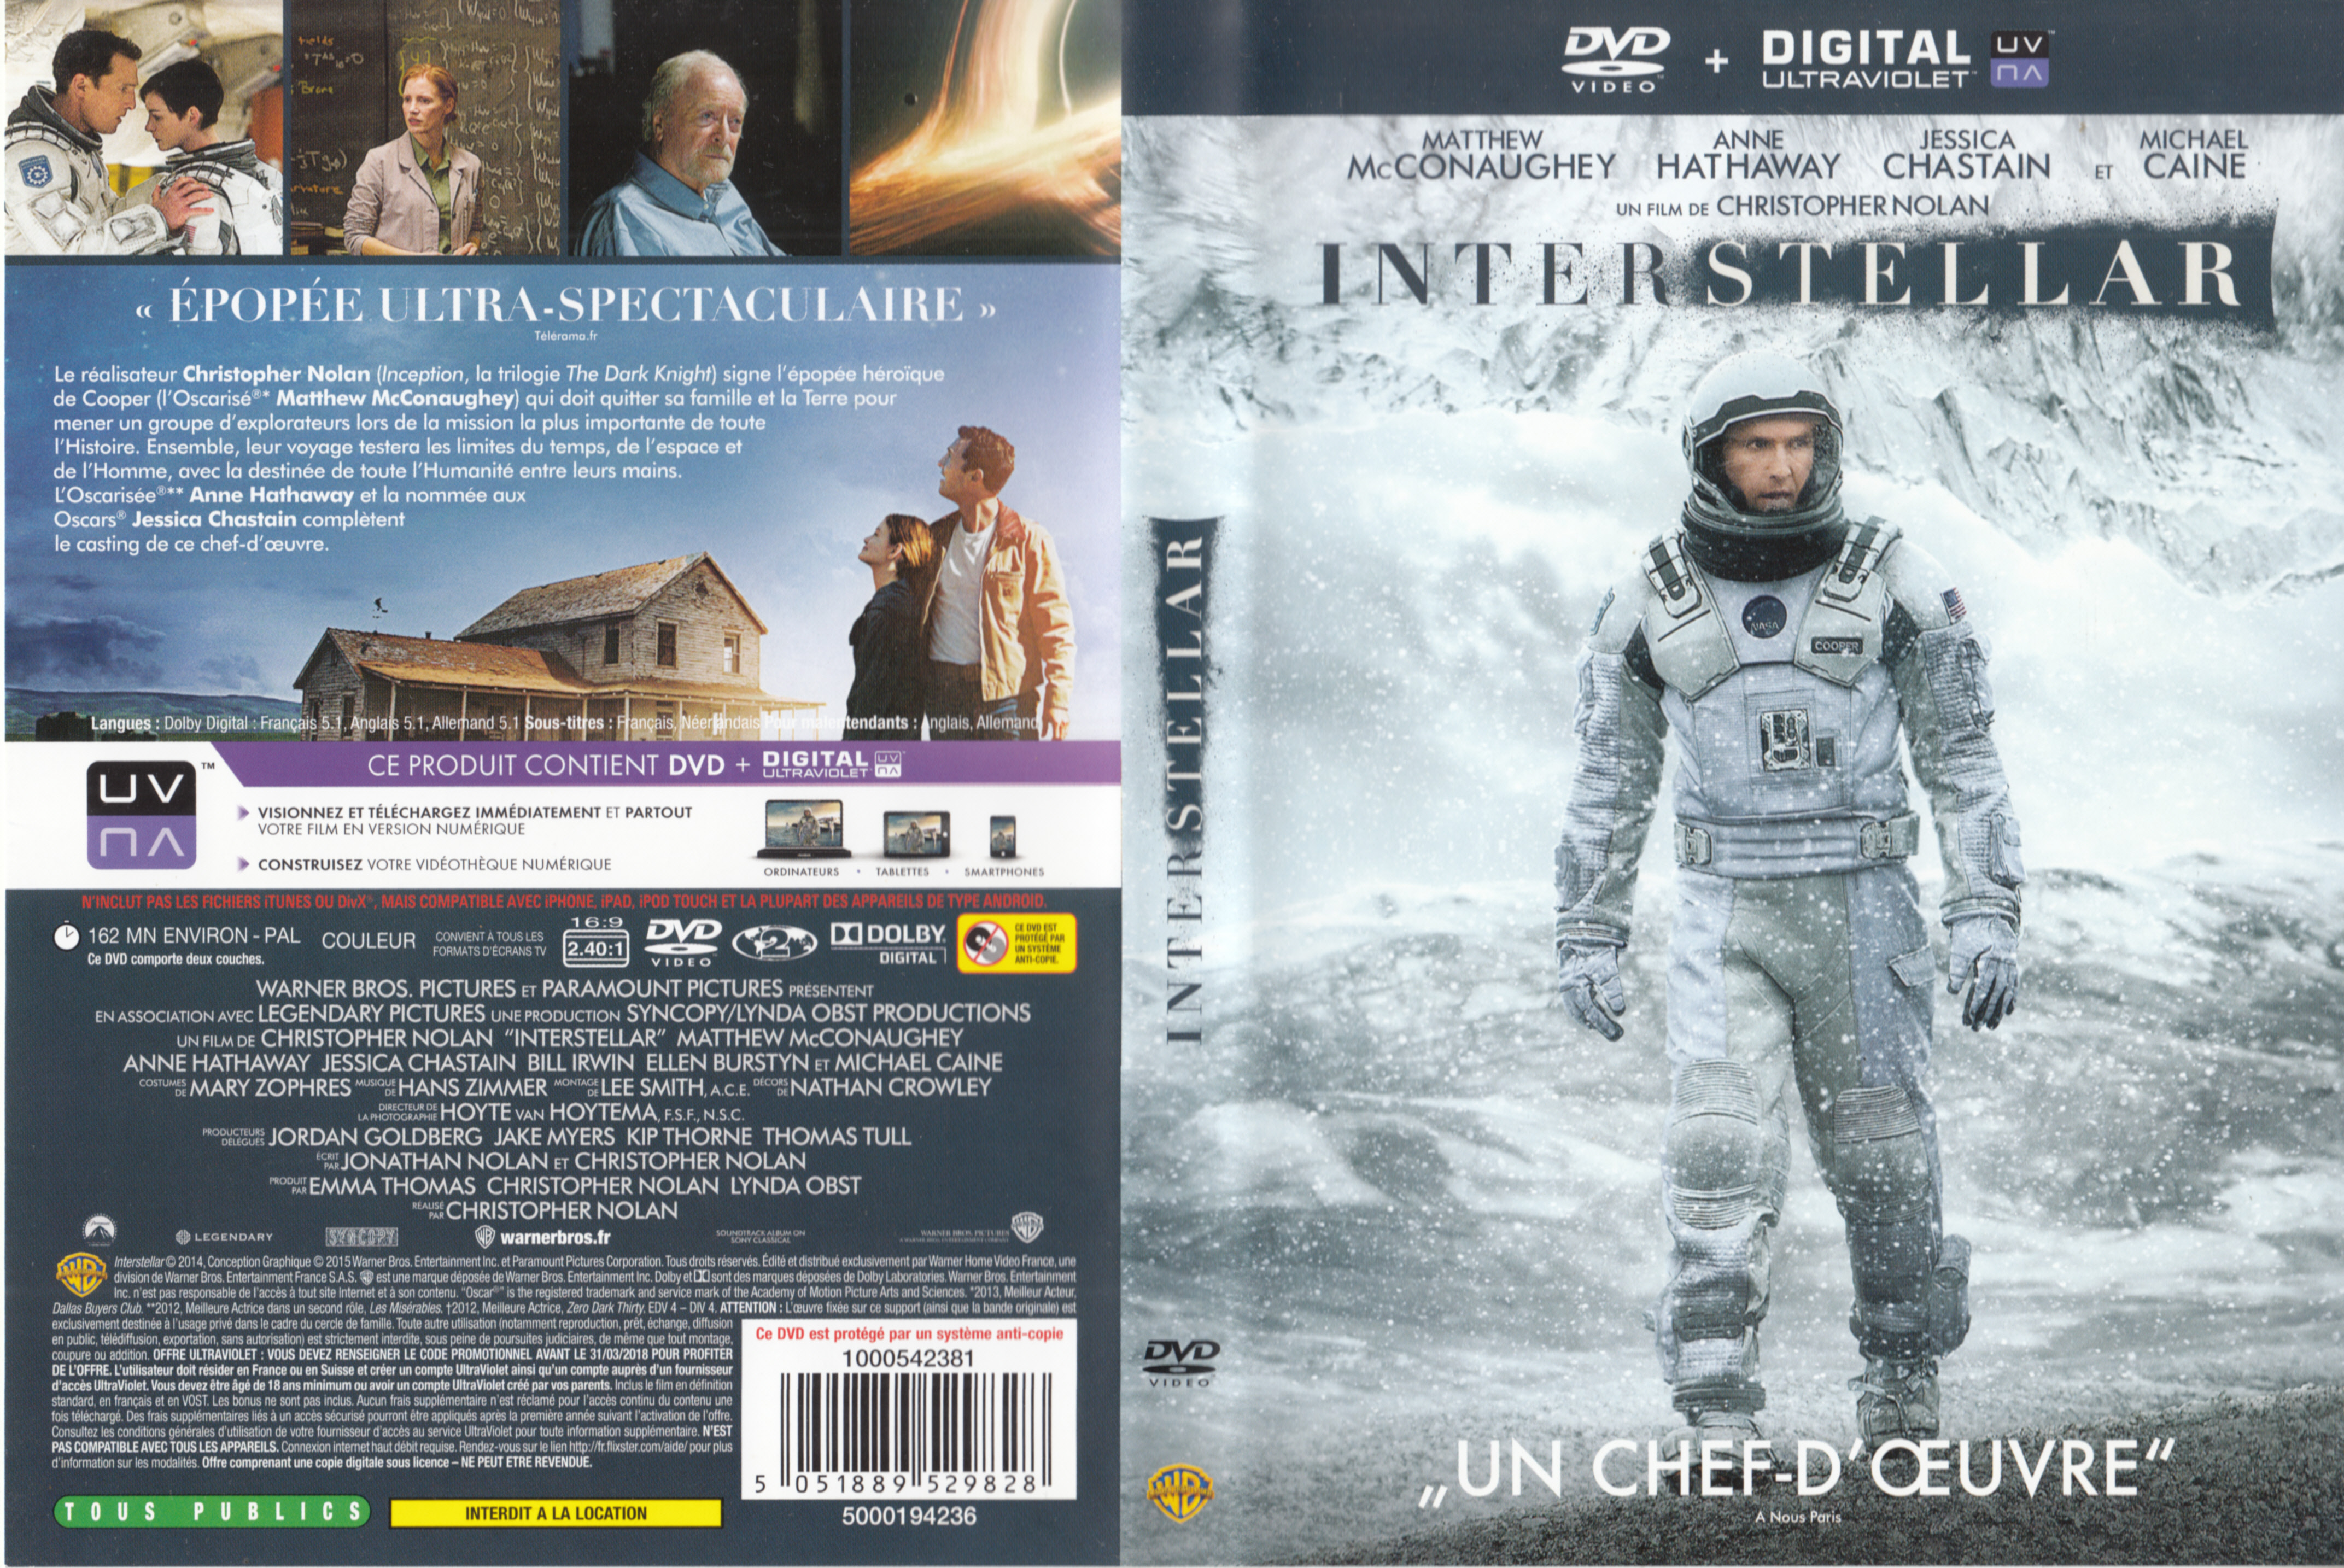 Jaquette DVD Interstellar v2